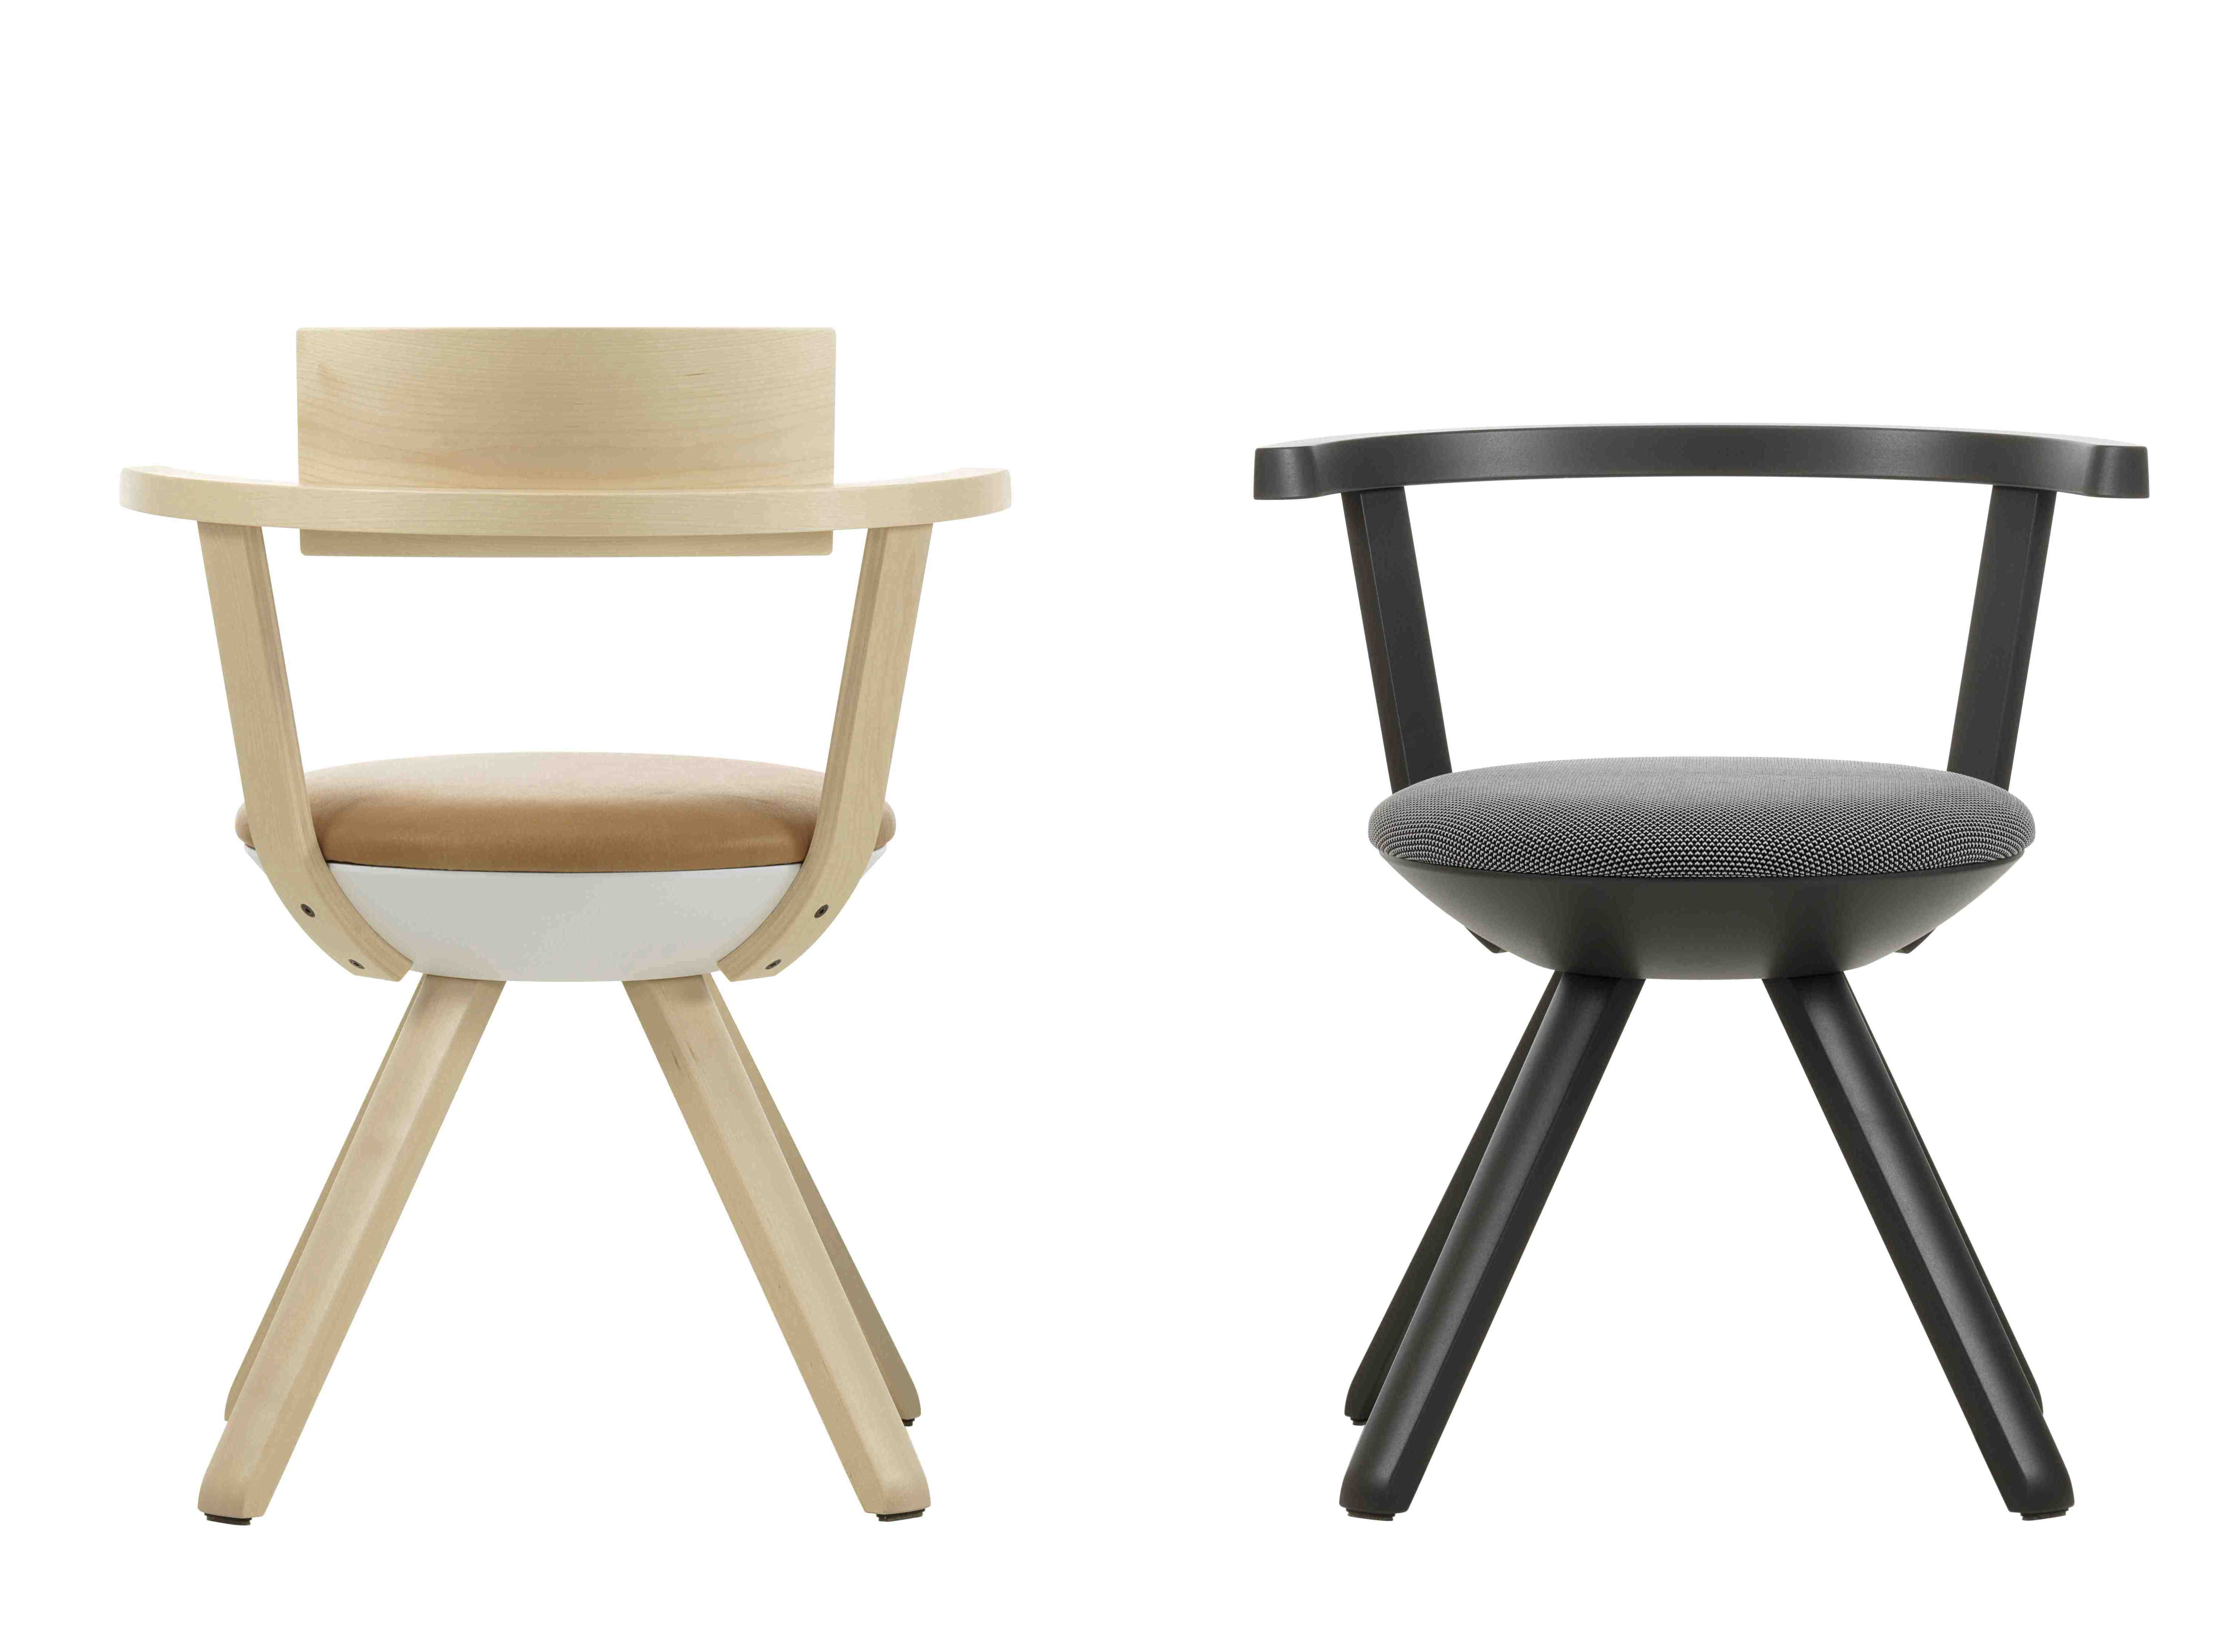 Rival Chair, design di Konstantin Grcic per Artek